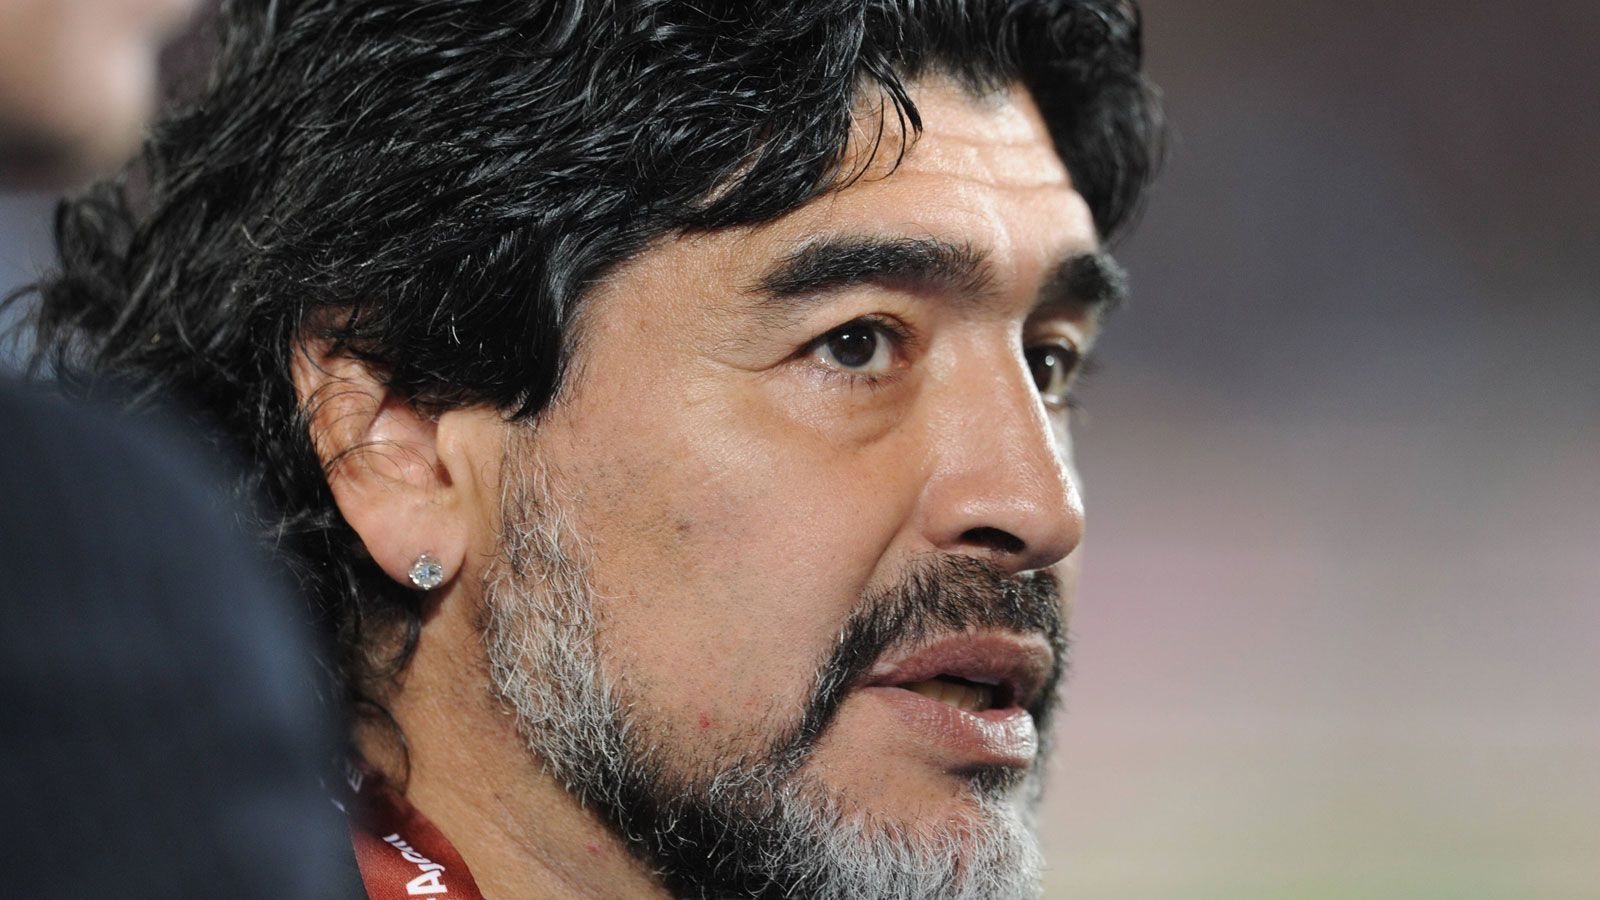 
                <strong>Letzte Station als Trainer</strong><br>
                2019 übernahm Maradona seinen letzten Klub – den argentinischen Erstligisten Gimnasia. Diesen trainierte er bis zu seinem Tod am 25. November 2020.
              